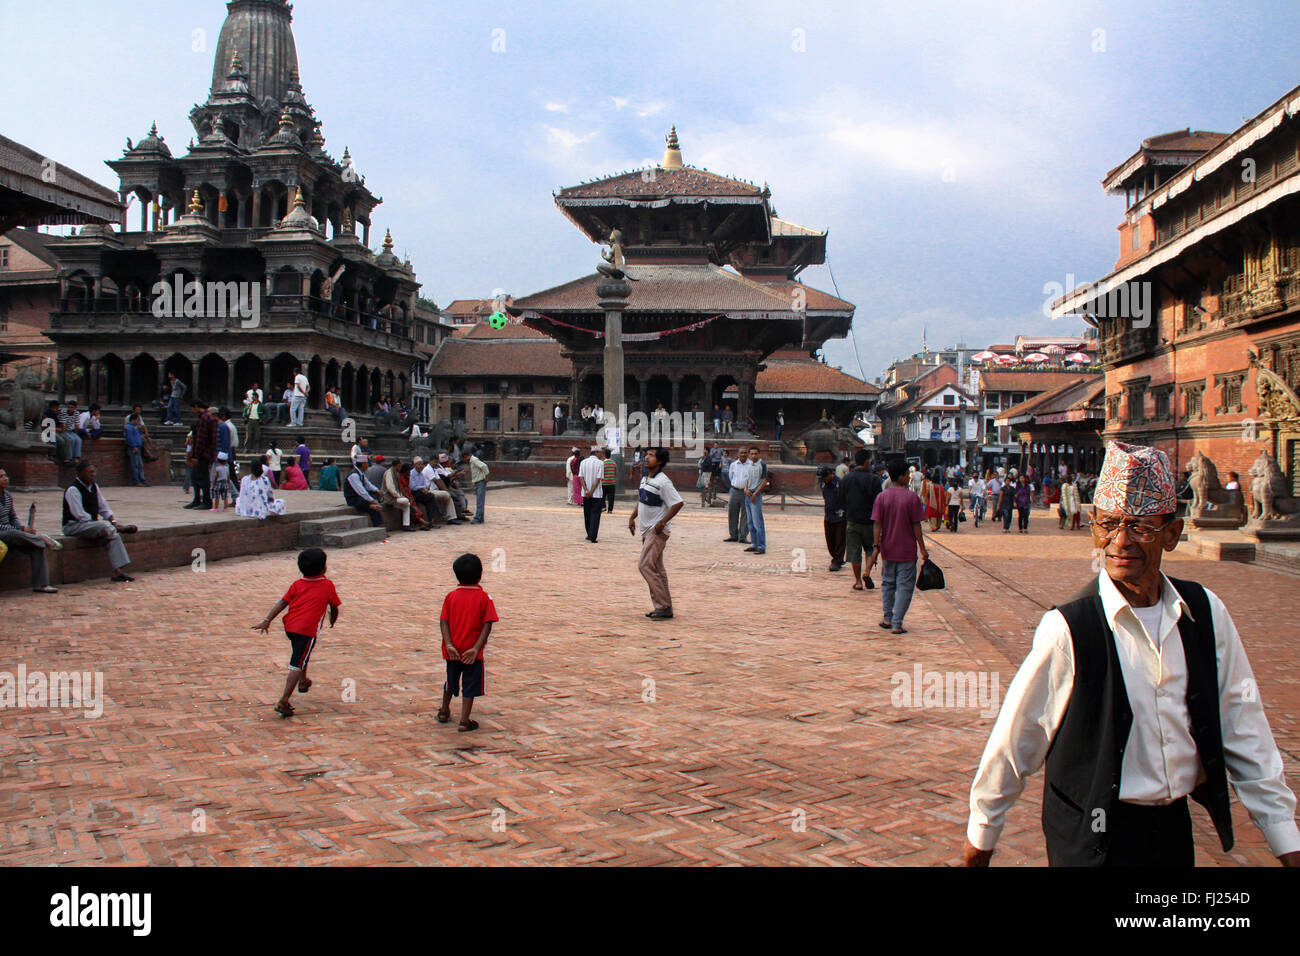 Durbar square, Patan, Nepal Stock Photo